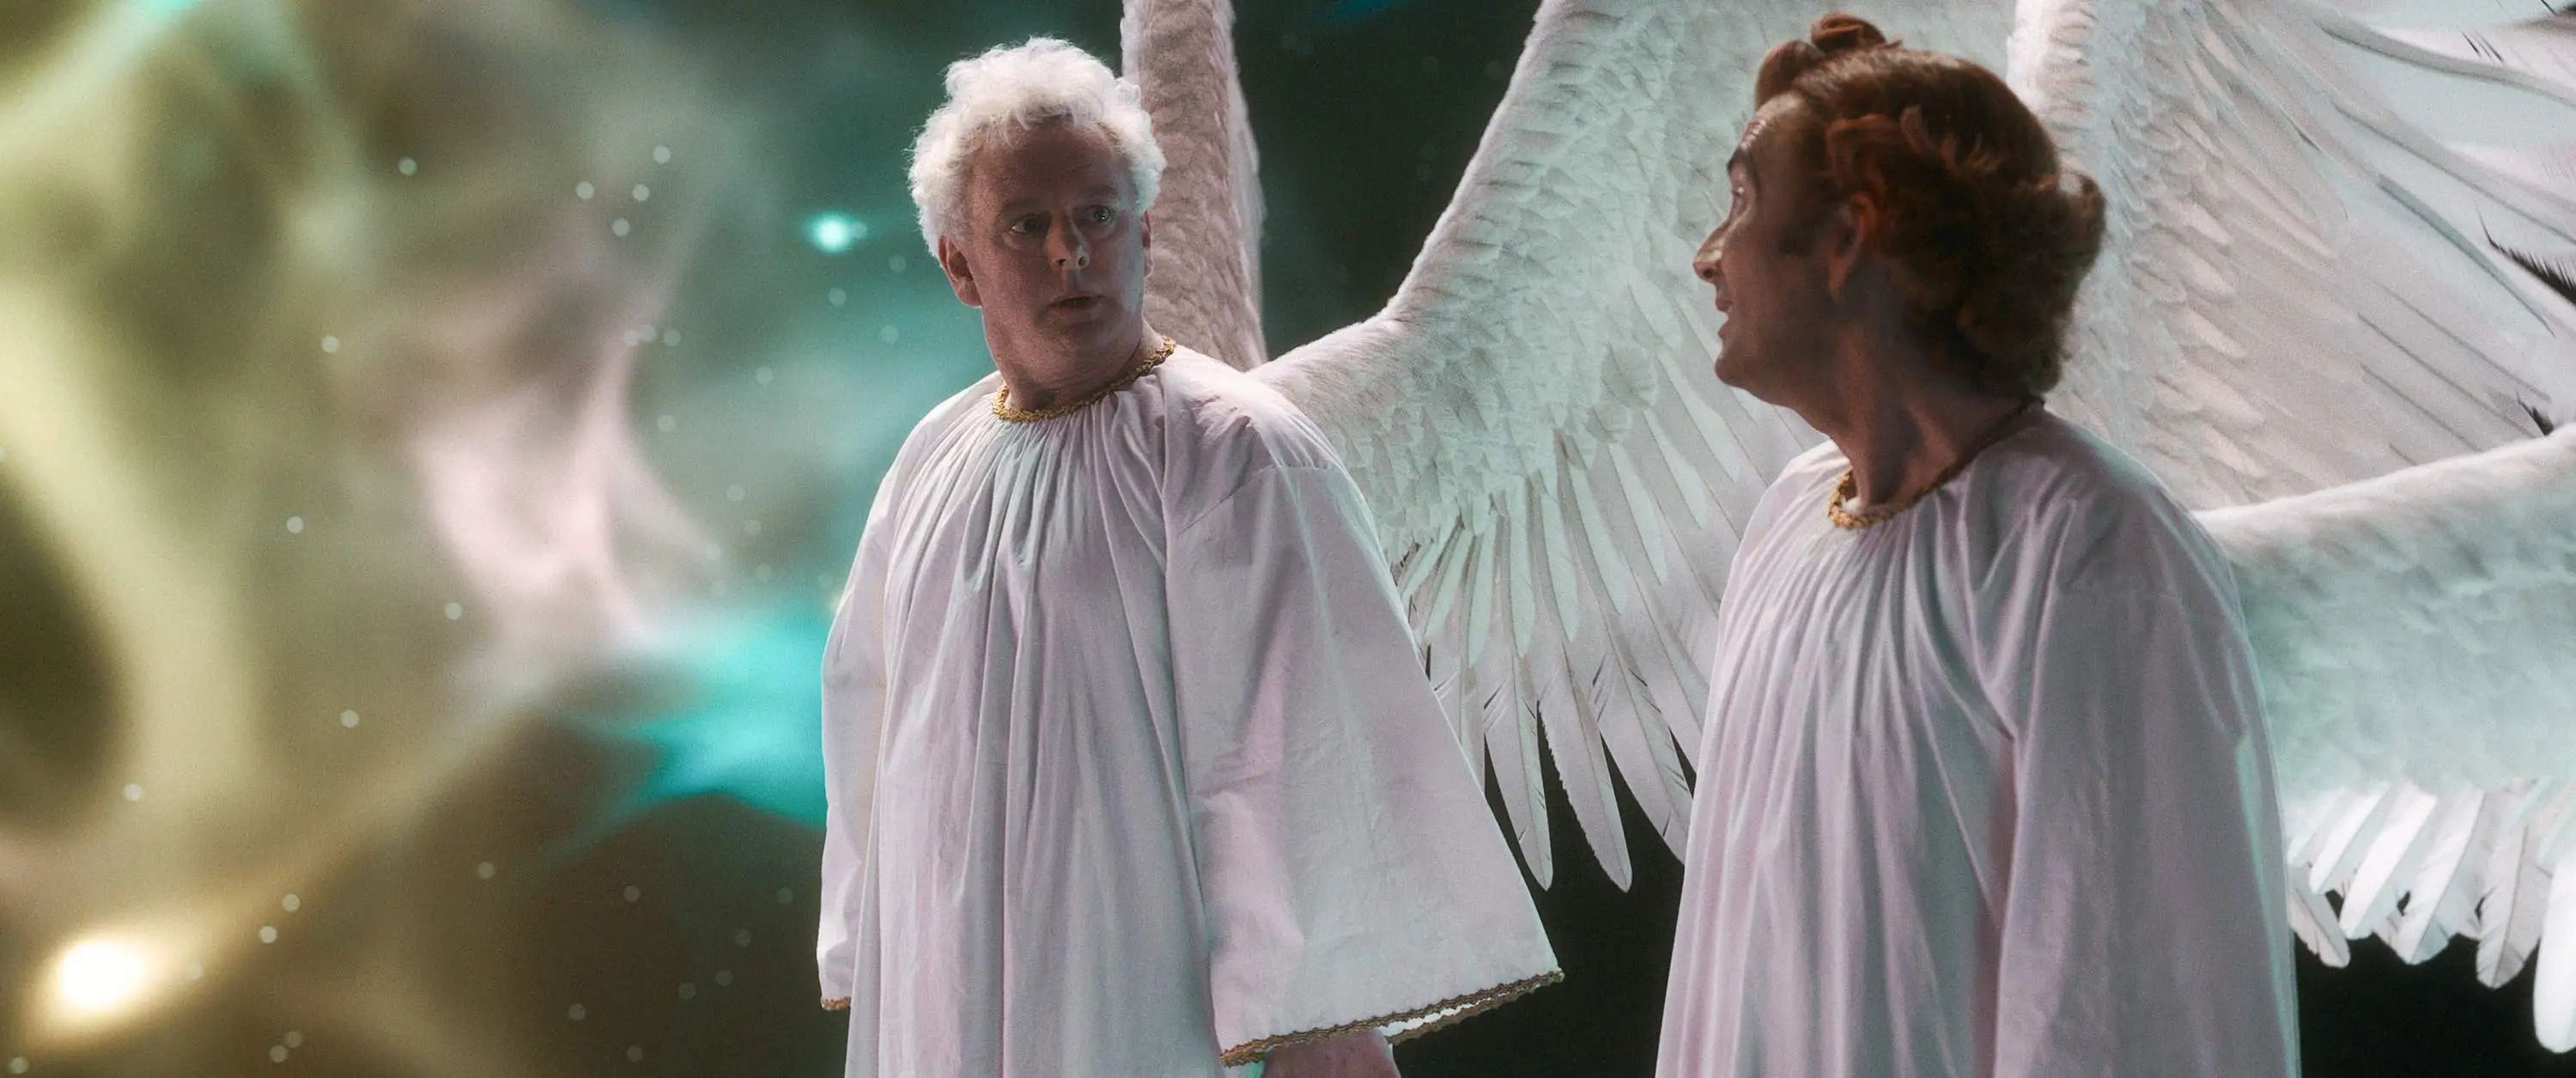 Aziraphale und Crowley als Engel, die den neu geschaffenen Kosmos beobachten